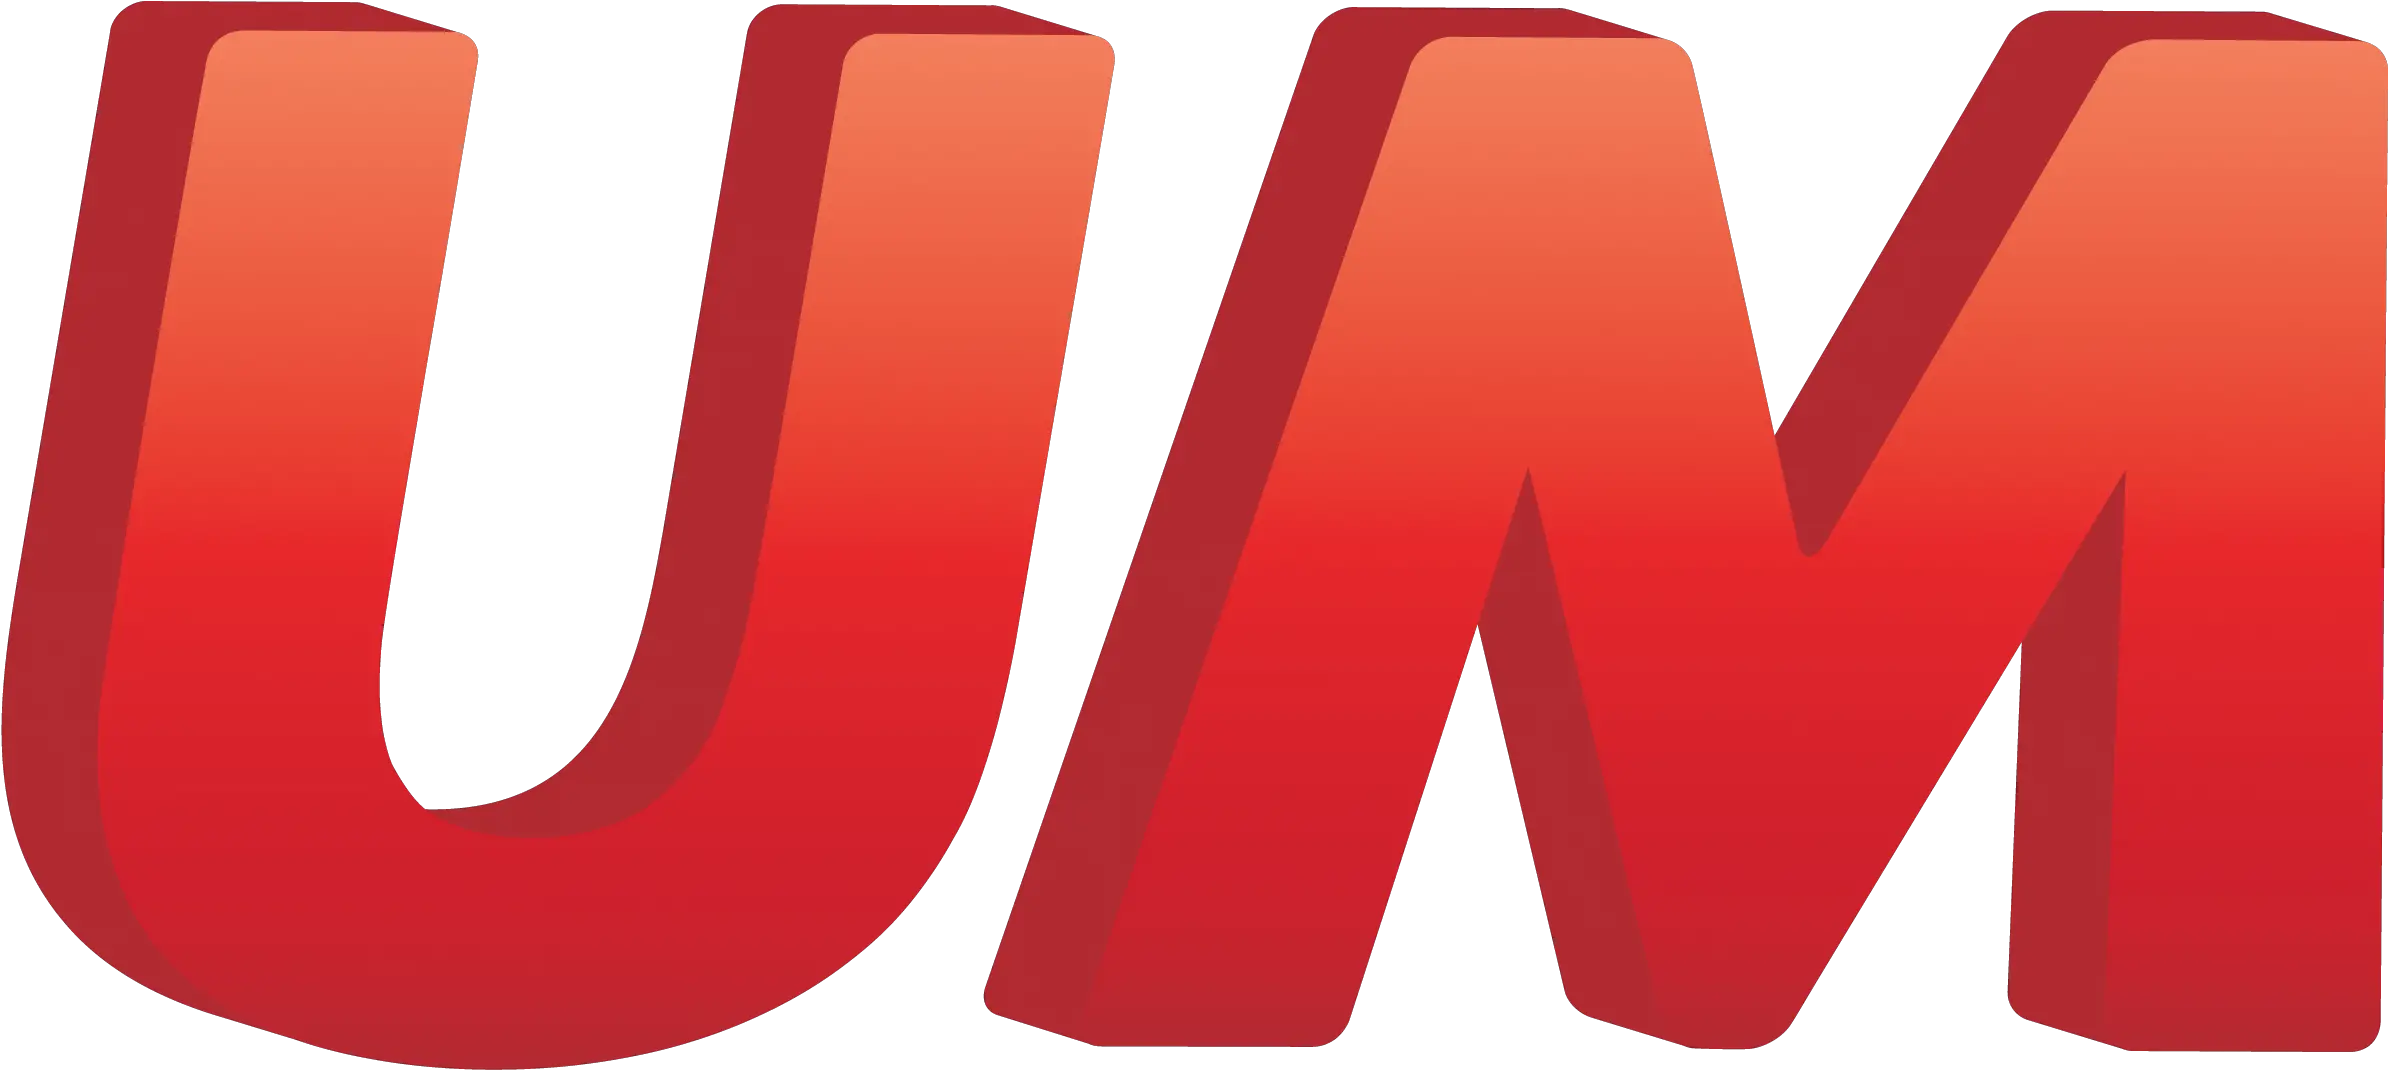 Universal Media Logo Transparent Universal Mccann Logo Png Universal Logo Png